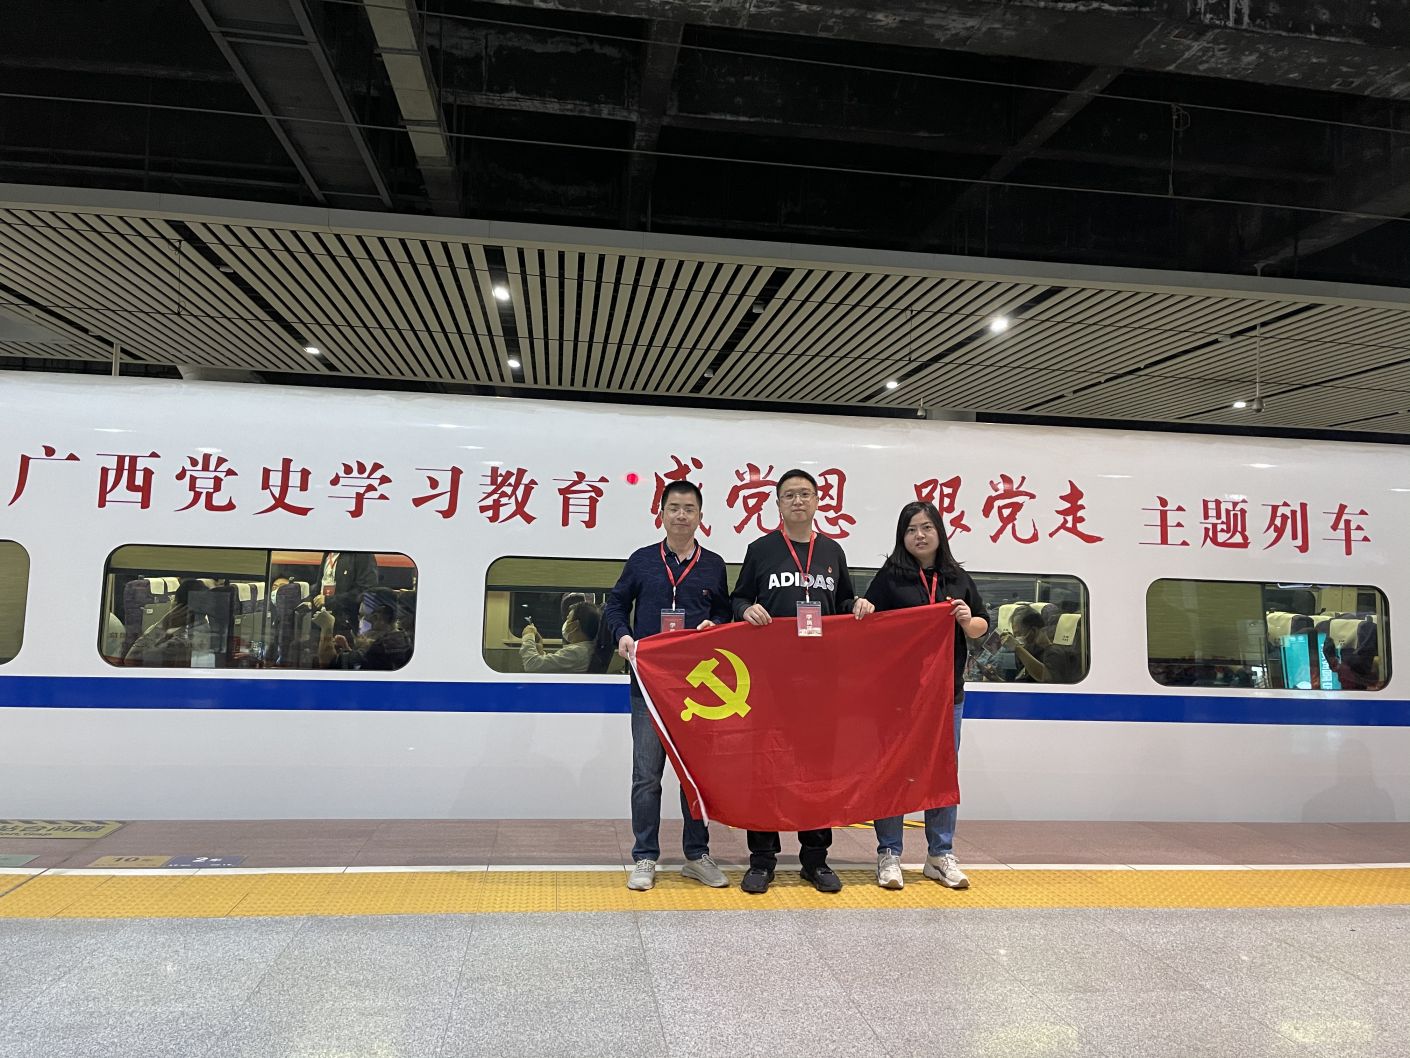 图为广西林业集团党员代表踏上主题列车开始红色之旅.jpg